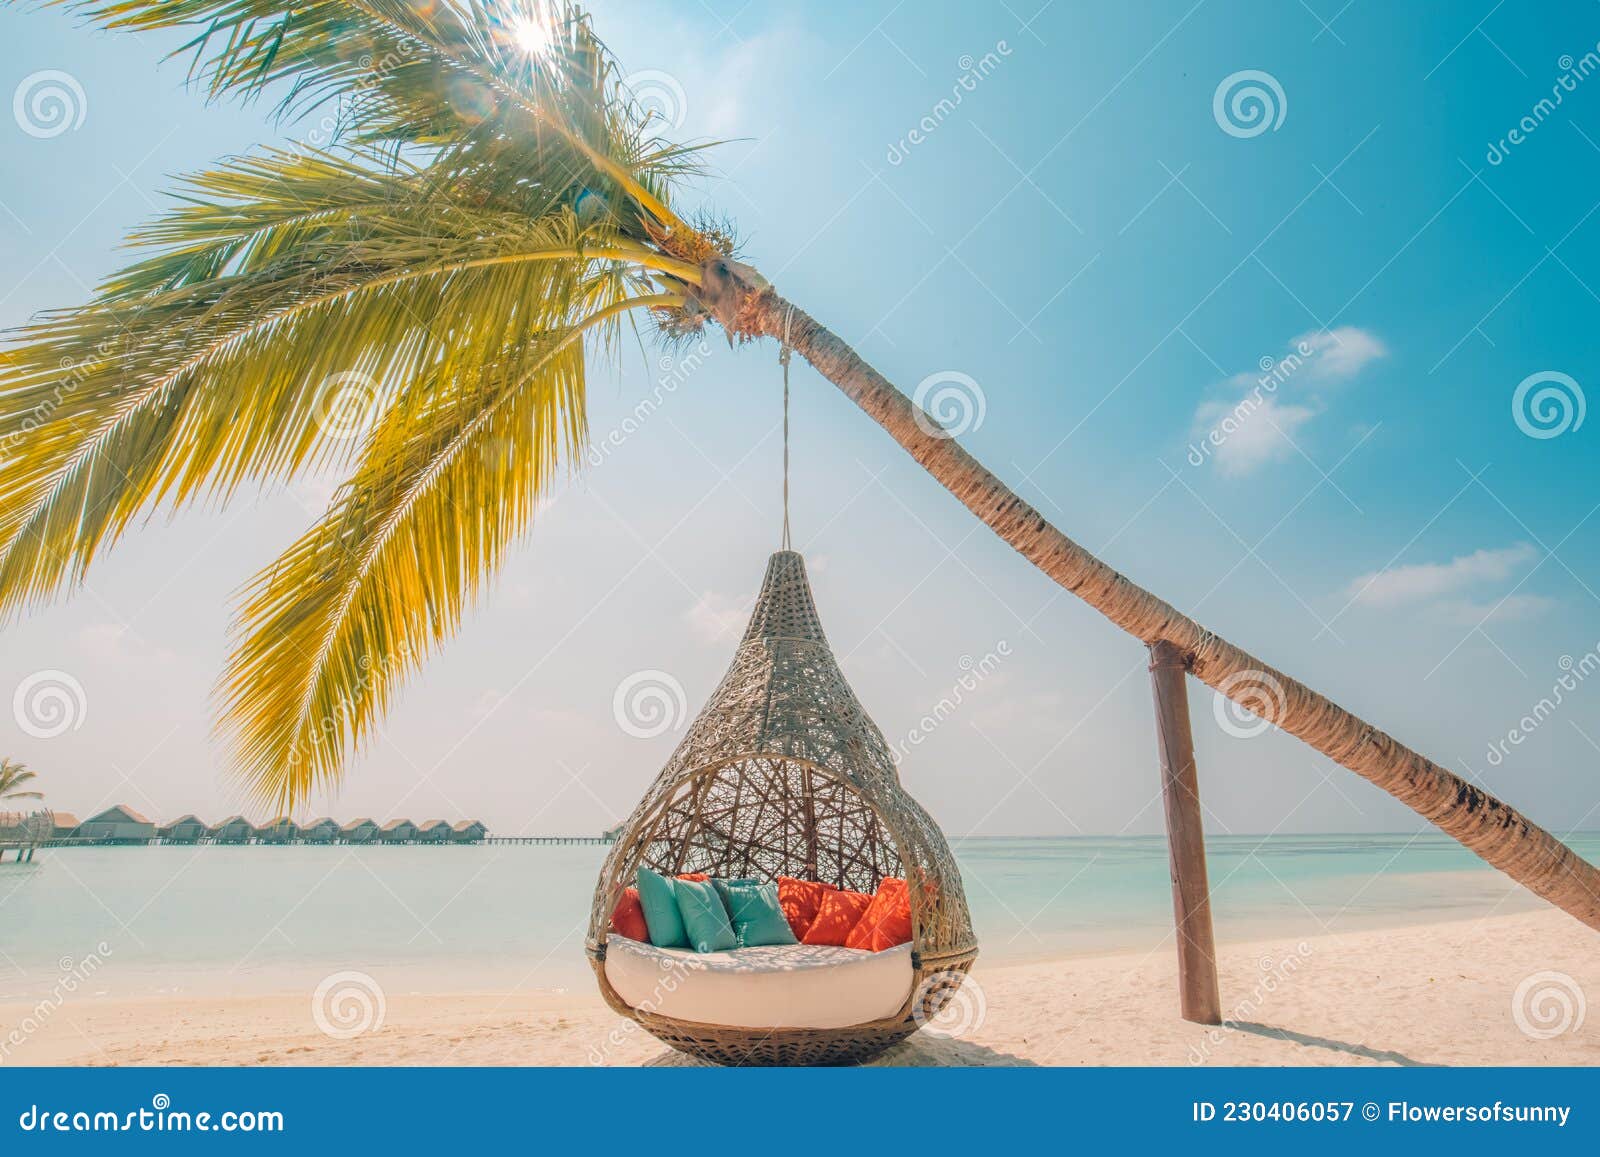 playa de arena blanca, sol y mar tranquilo. bandera tropical